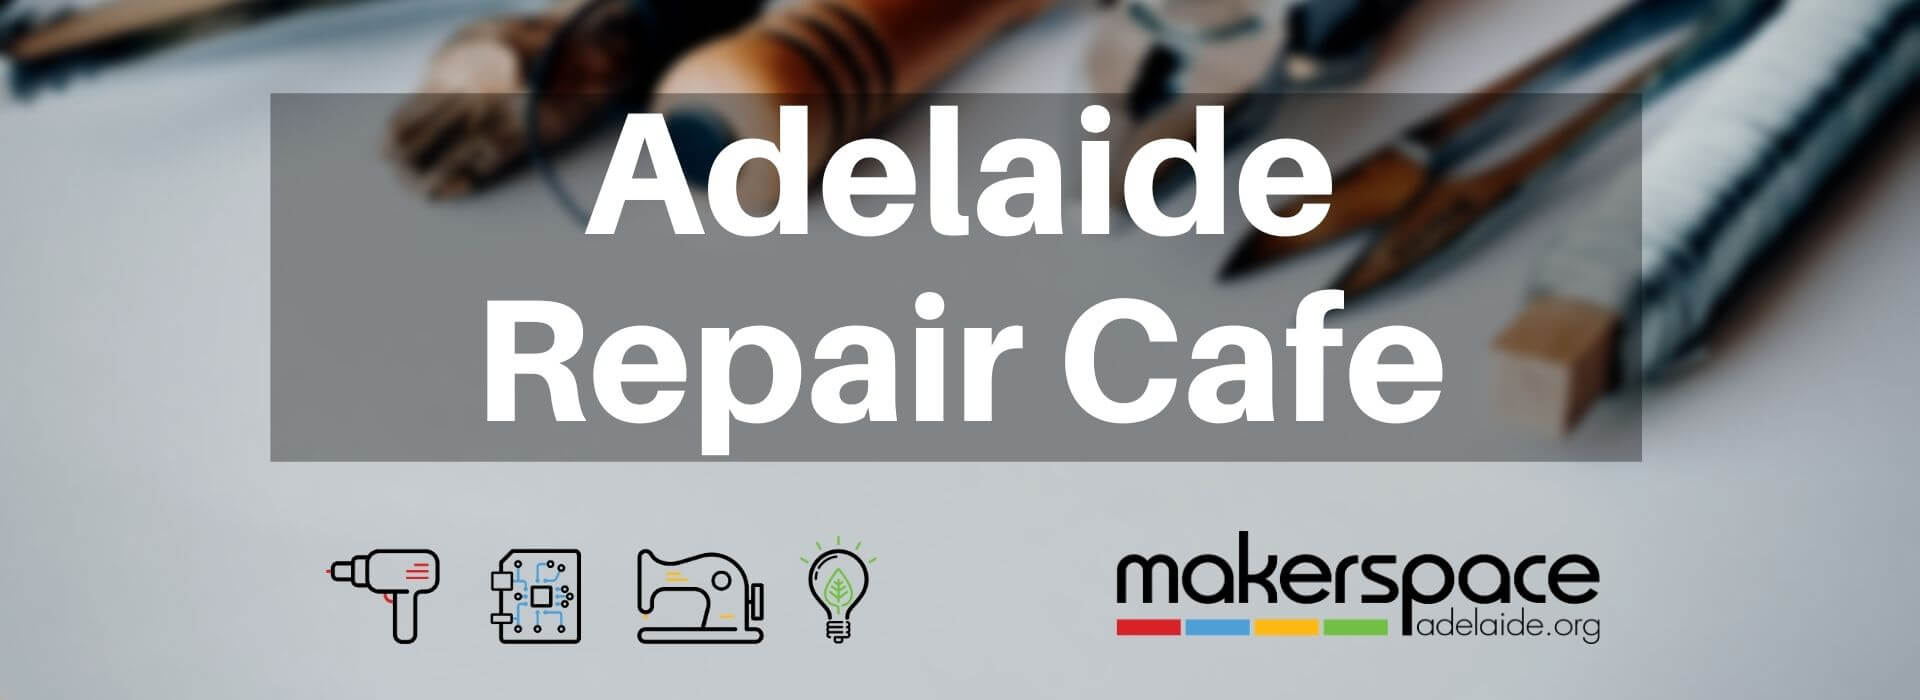 Adelaide Repair Cafe